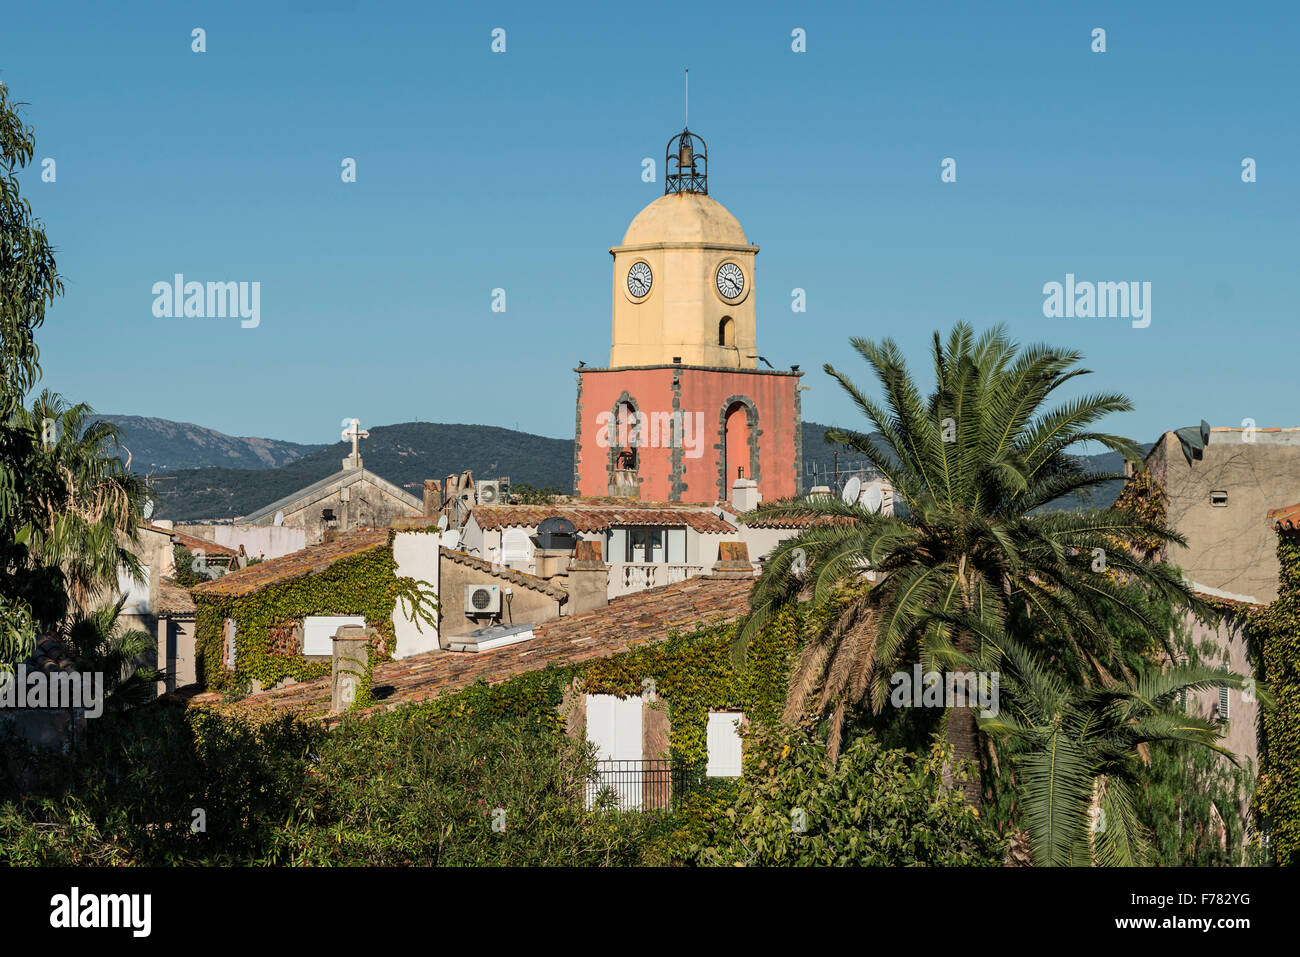 Saint Tropez , Clock tower, Cote d' Azur, France Stock Photo